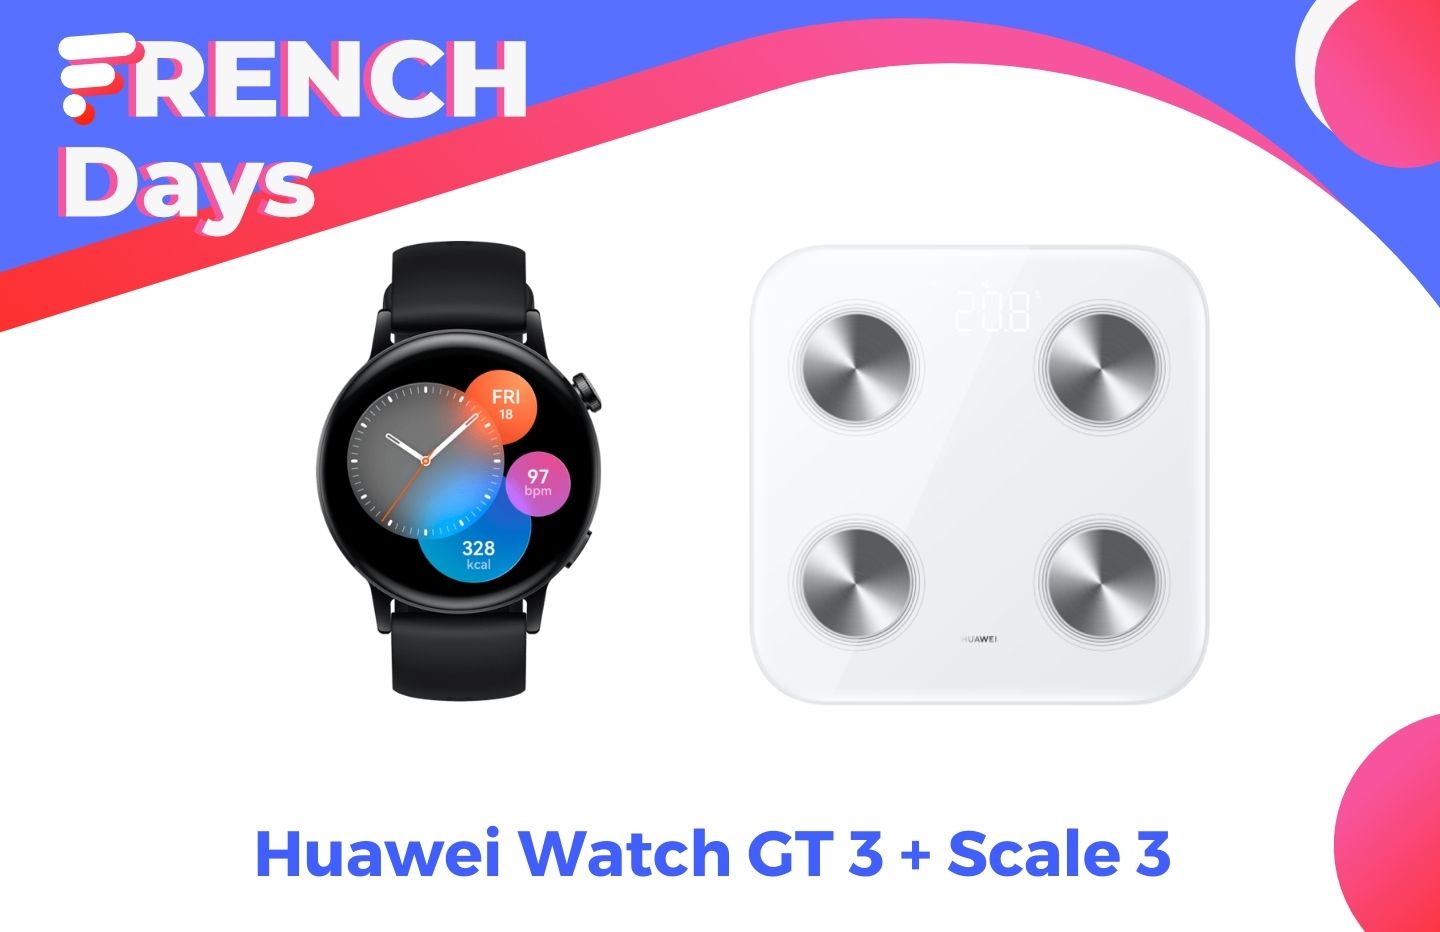 La Huawei Watch GT 3 est à un bon prix pendant les French Days, avec une balance  connectée offerte